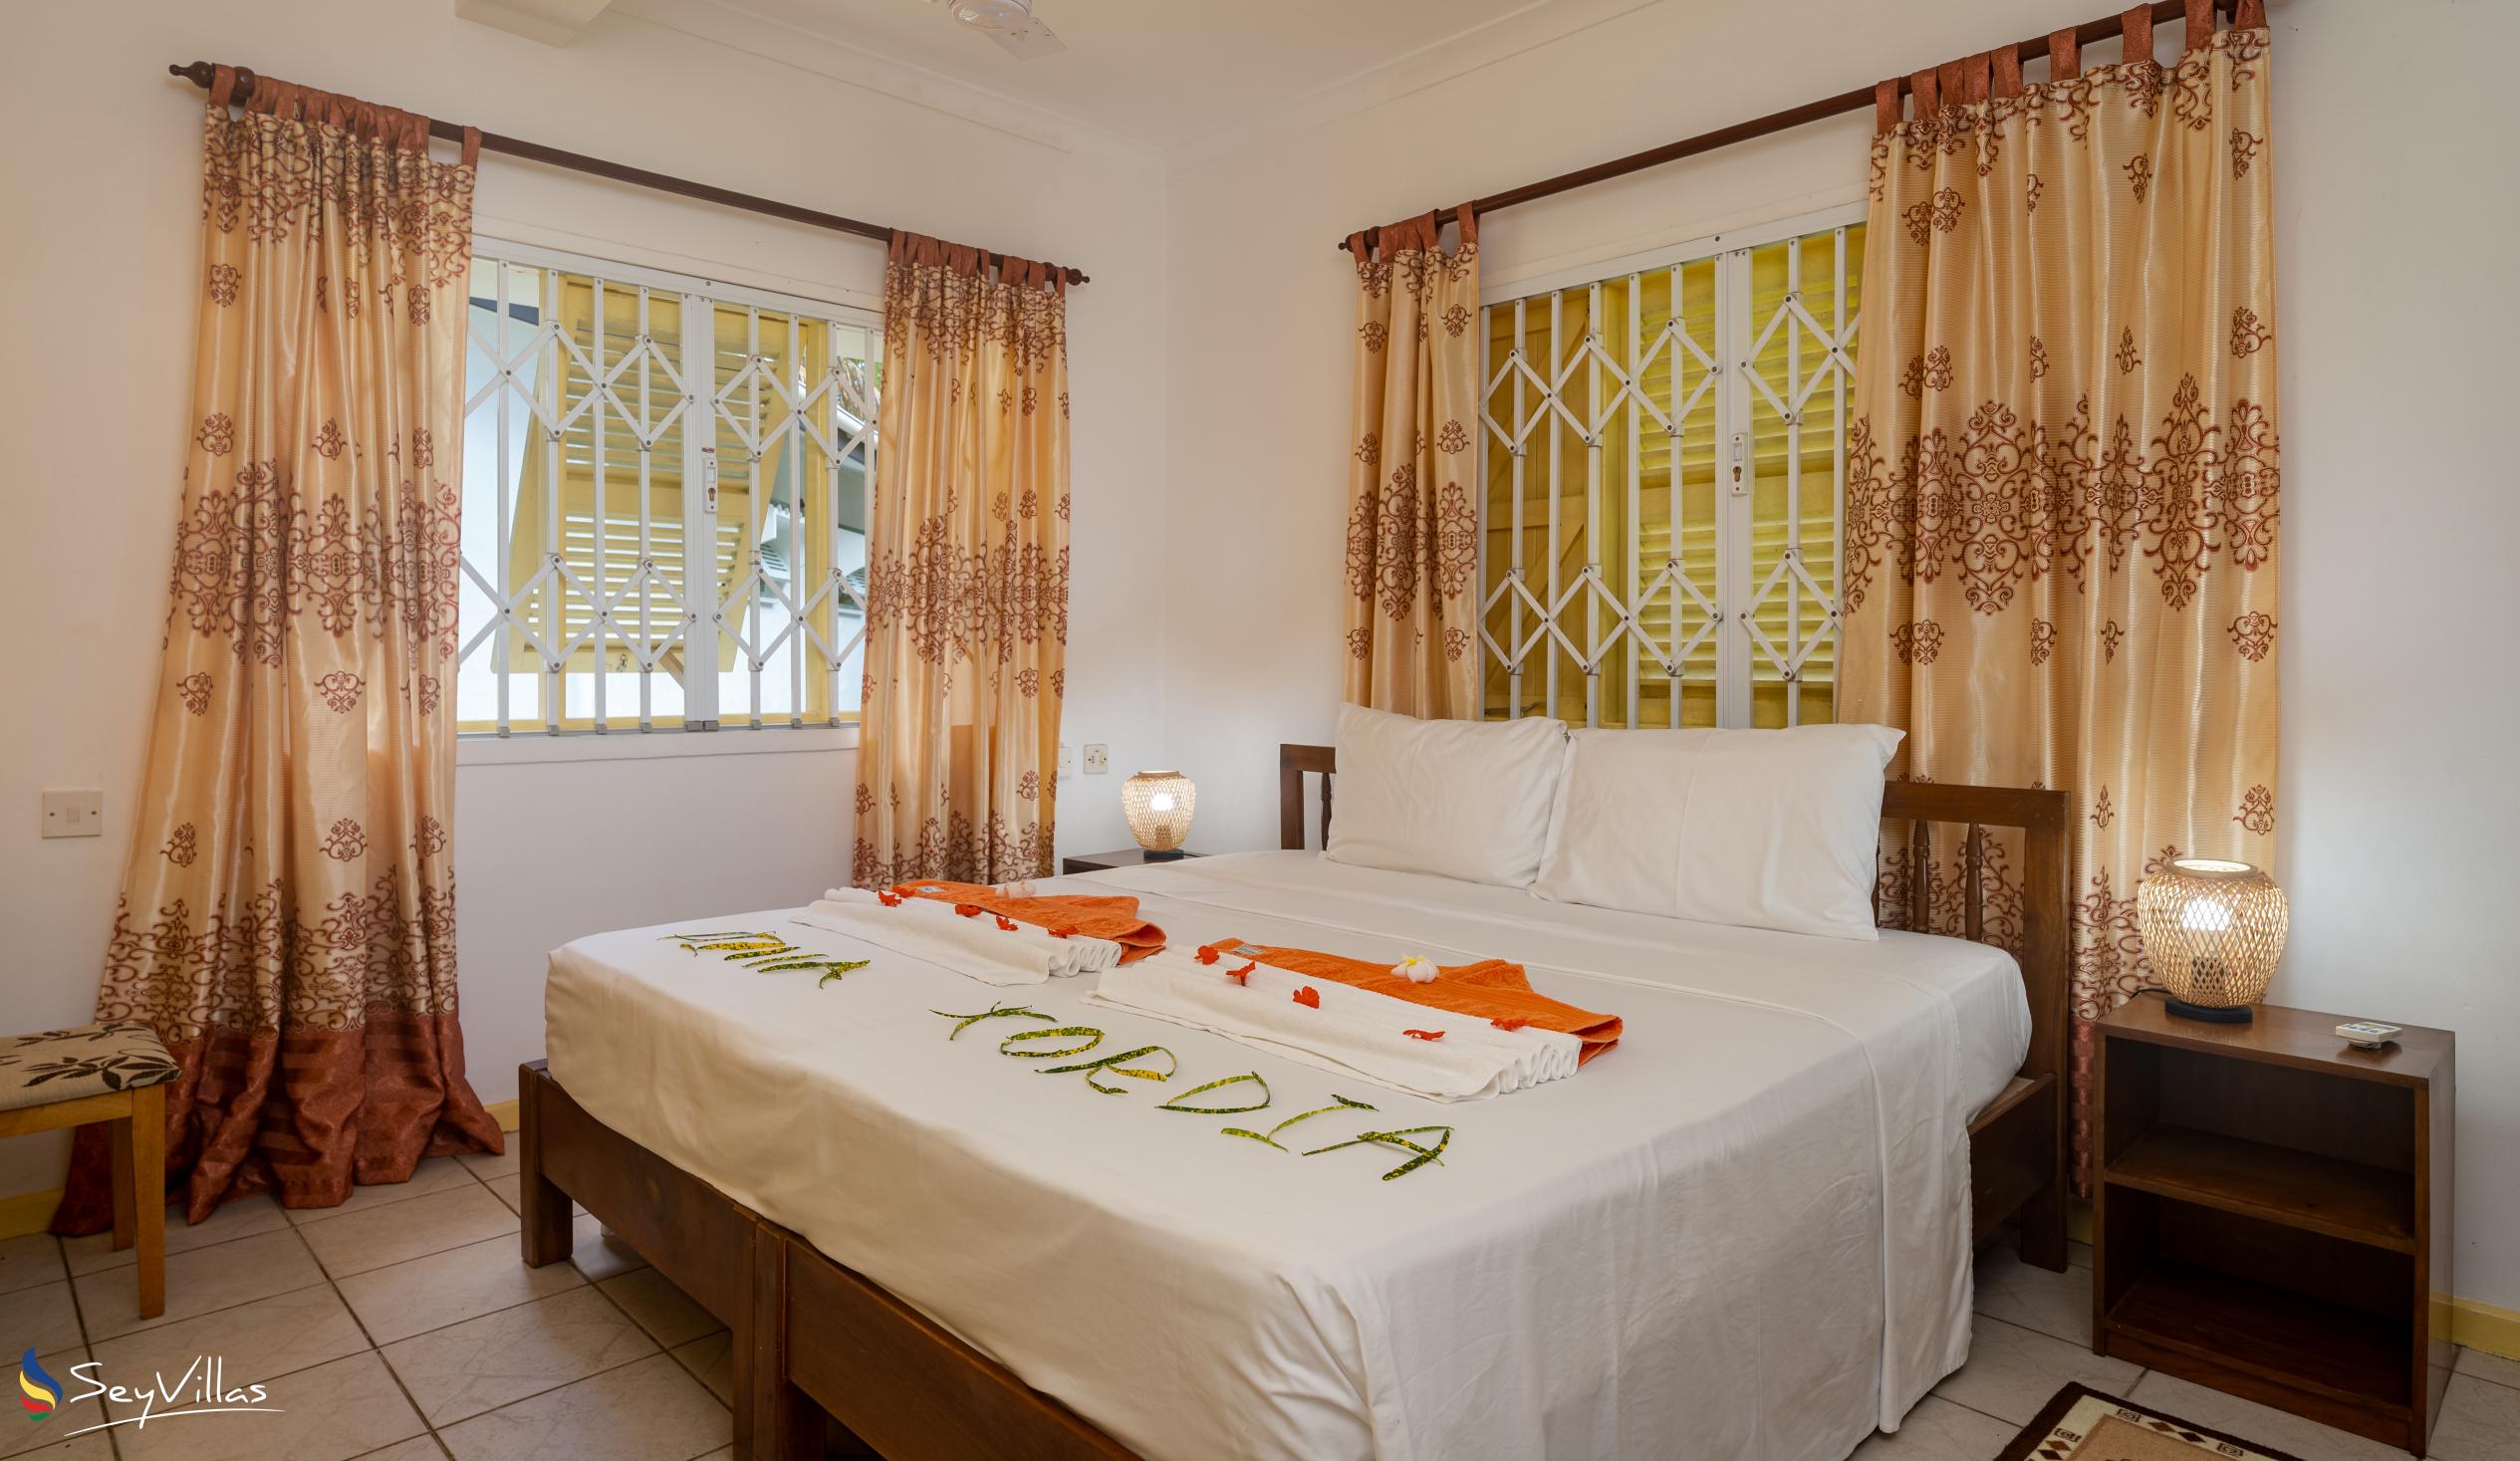 Foto 57: Villa Kordia - Villa 2 Chambres - Mahé (Seychelles)